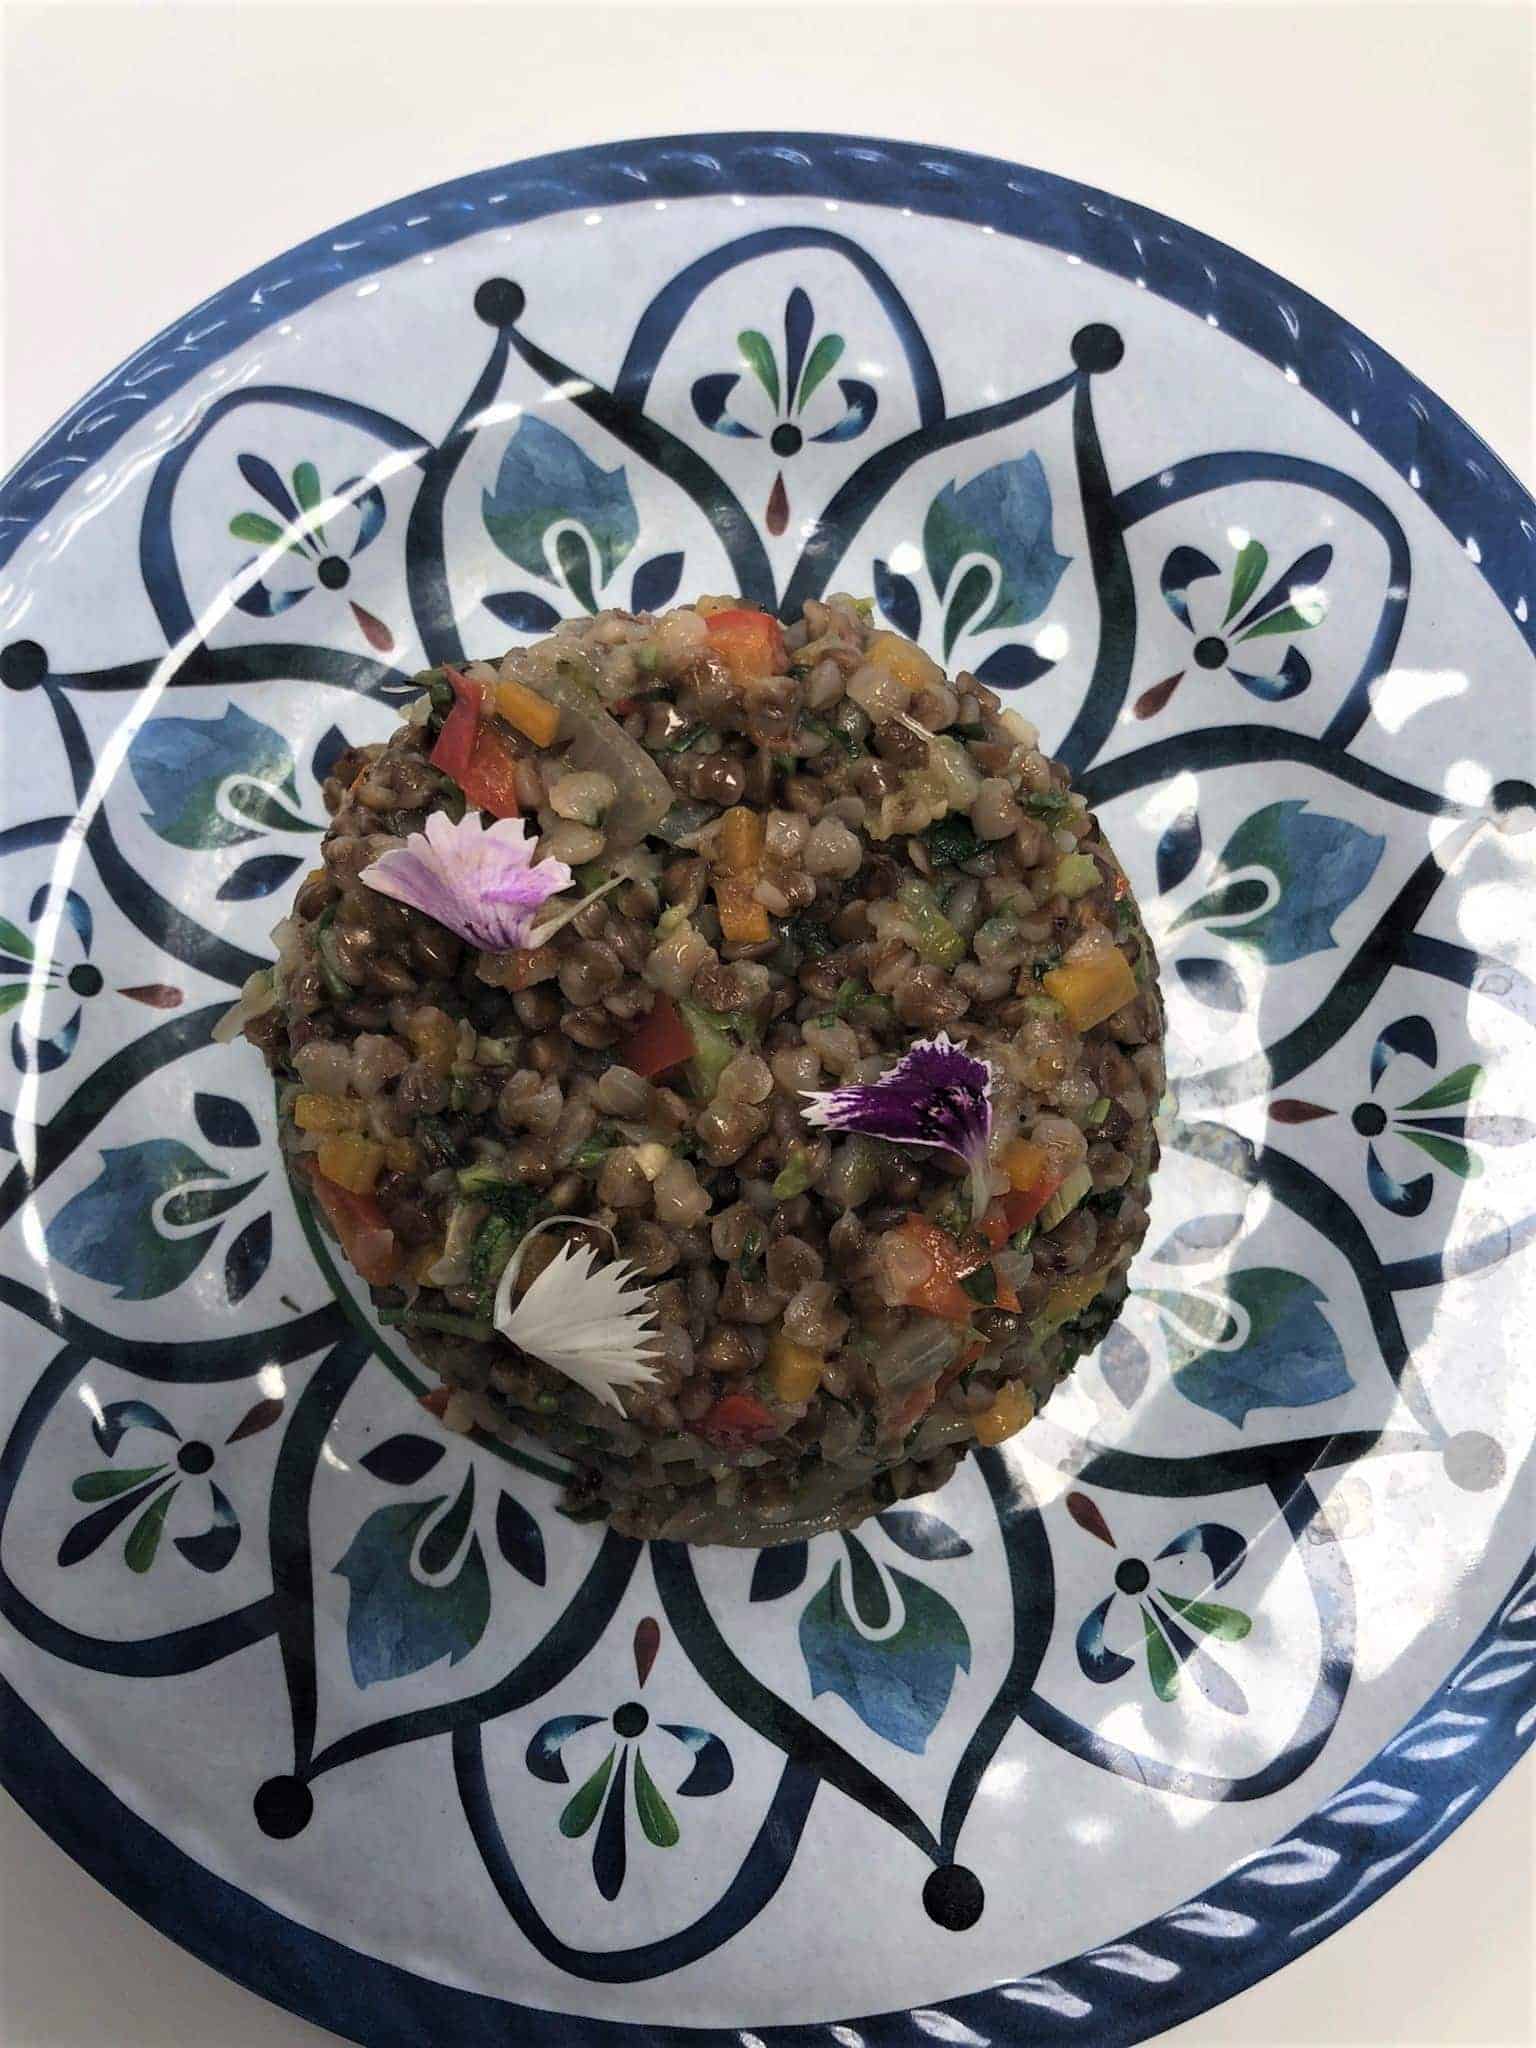 מתכון כוסמת למבוגרים בשילוב ירקות באדיבות אליאב בצלאל שף מרכז נורית צילום אסף דיין 3